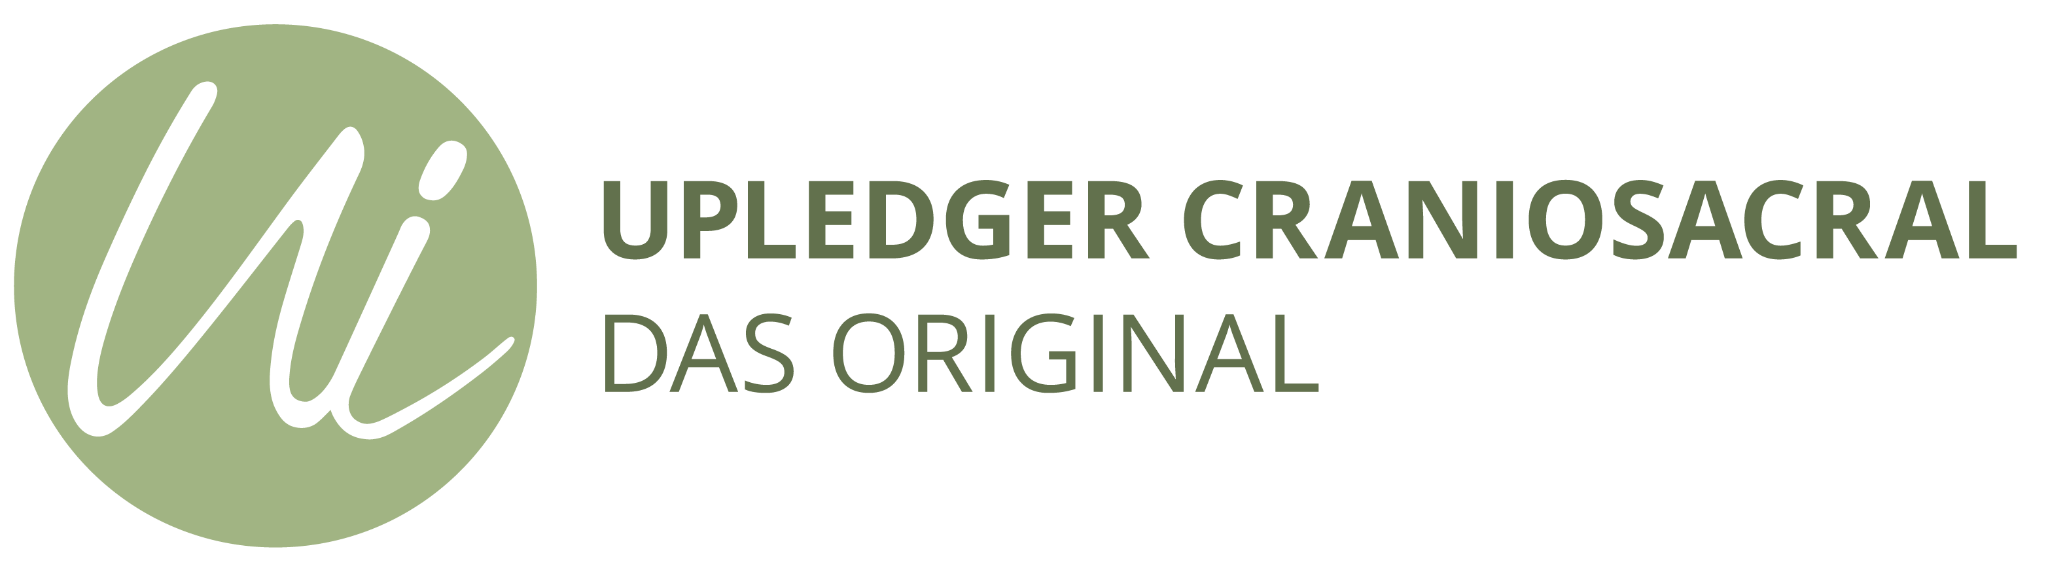 Upledger Craniosacral - Das Original